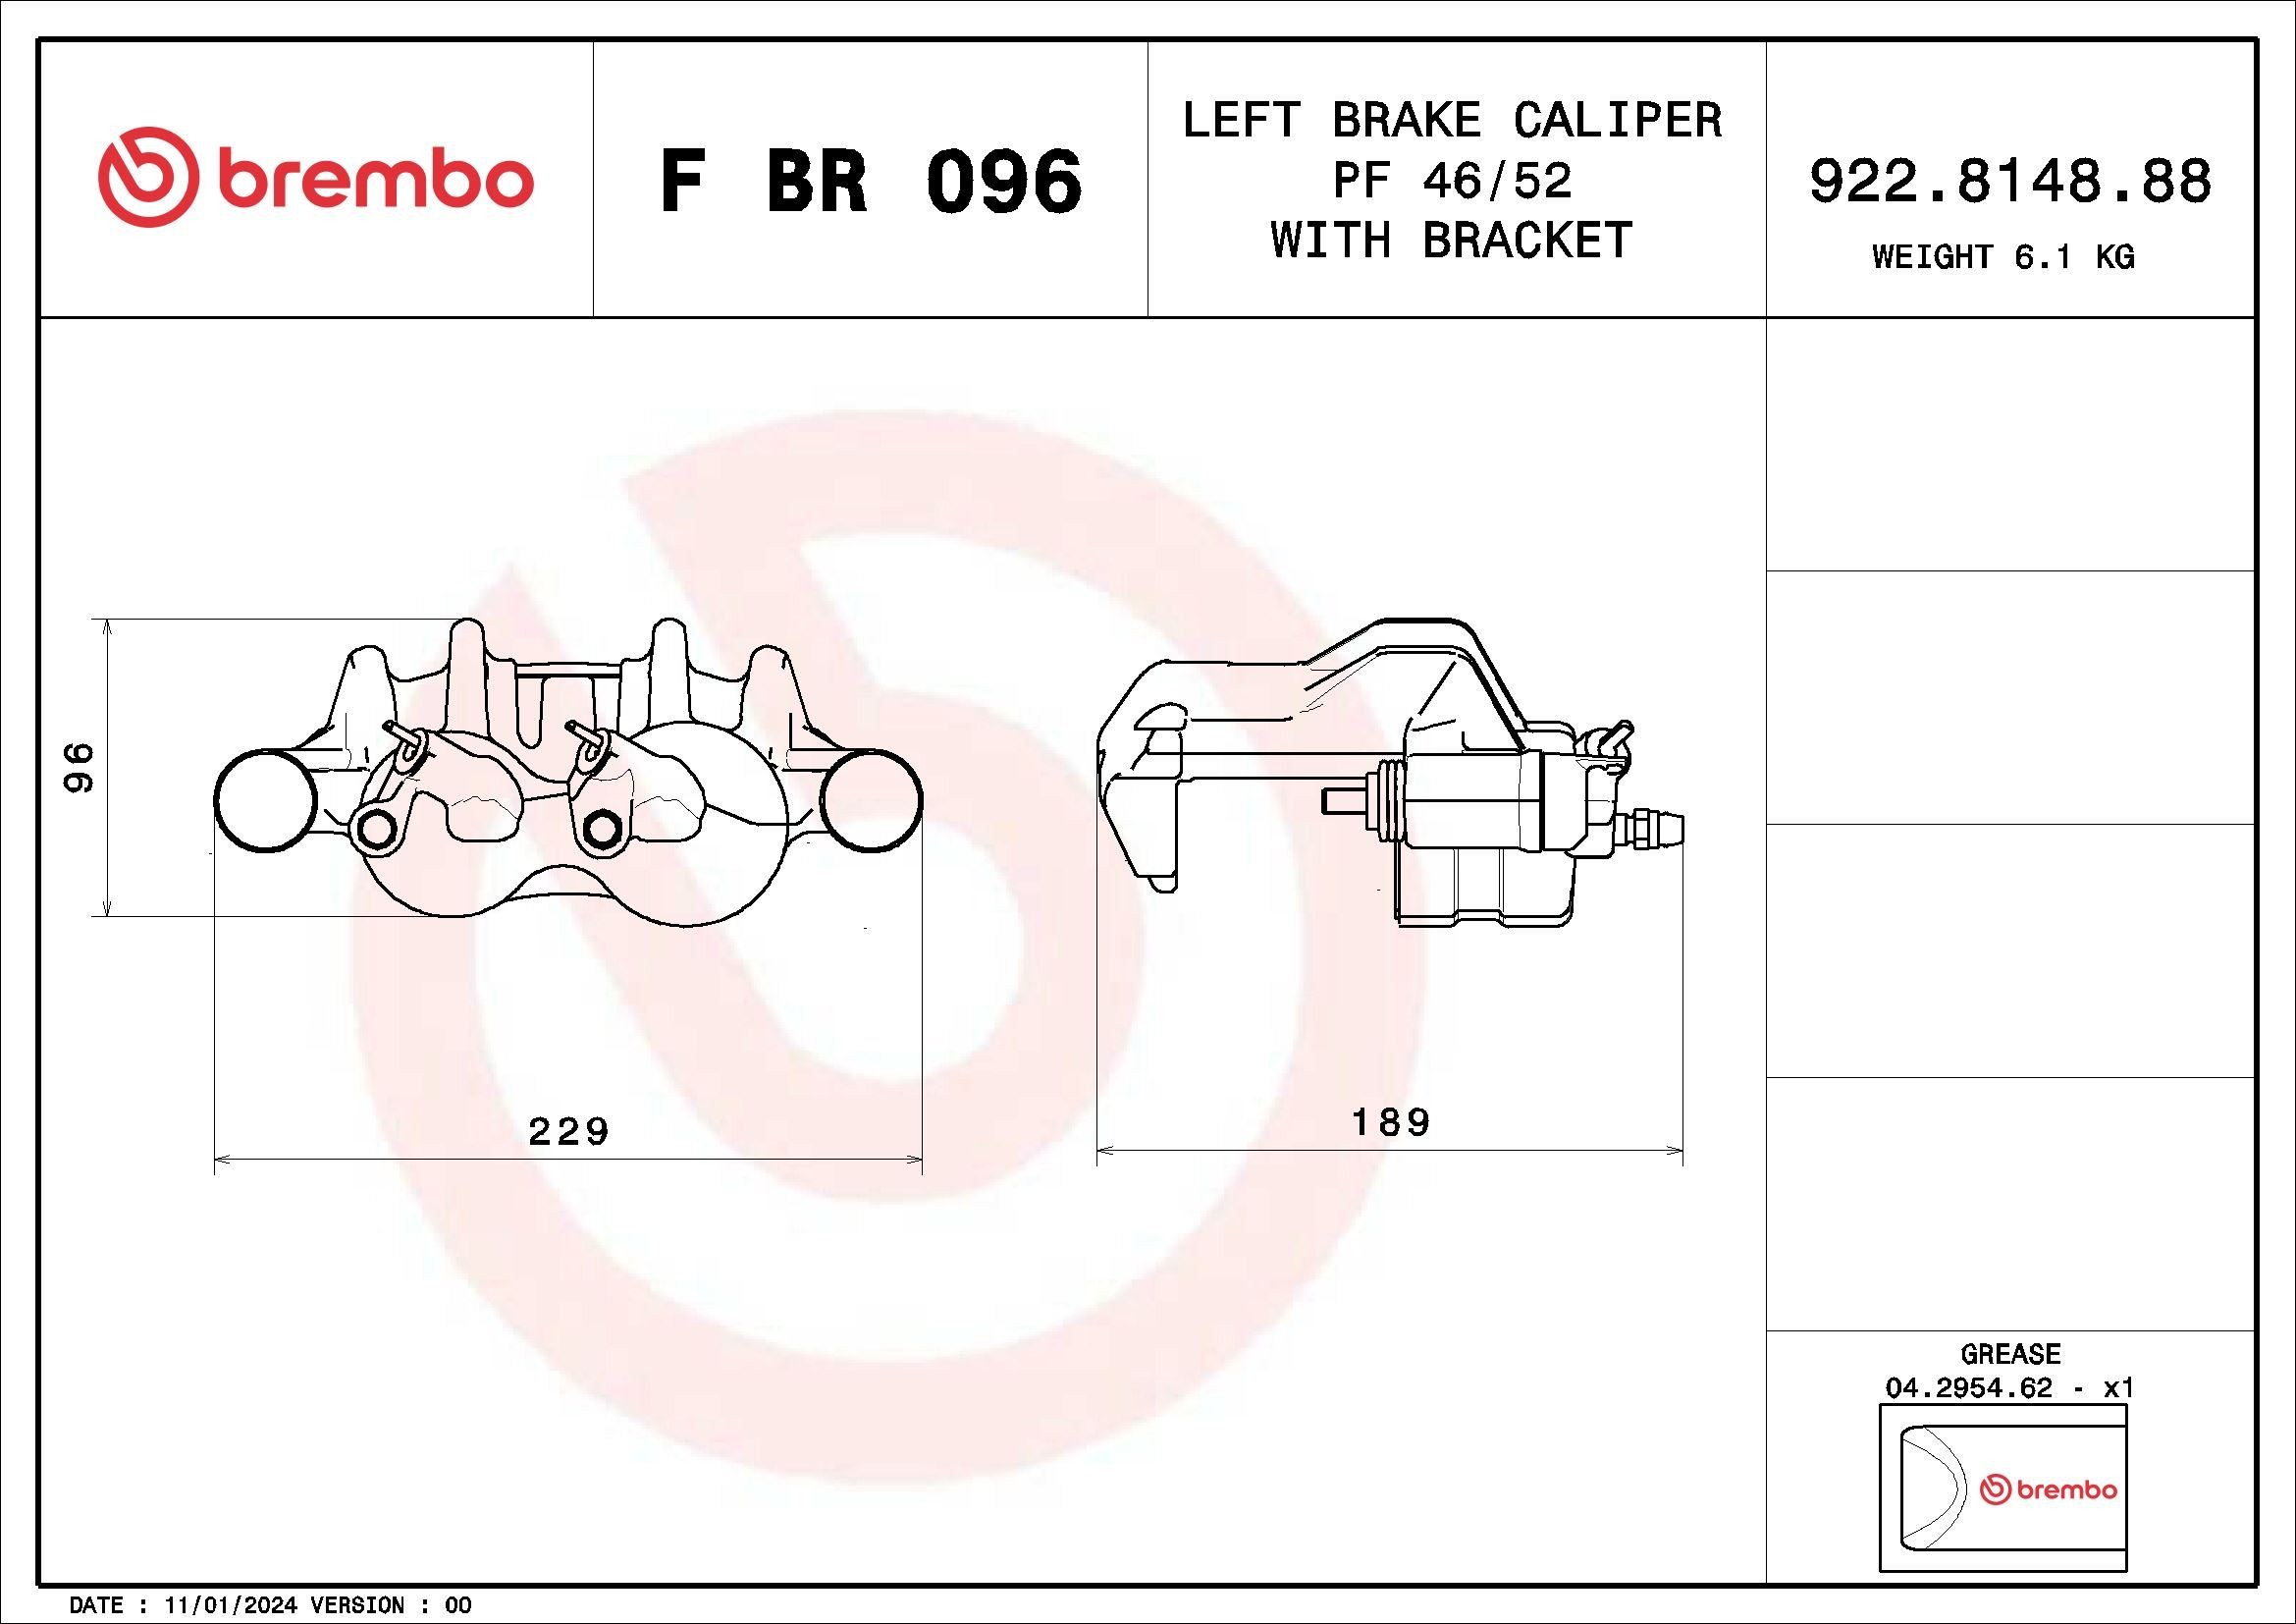 BREMBO Calipers F BR 096